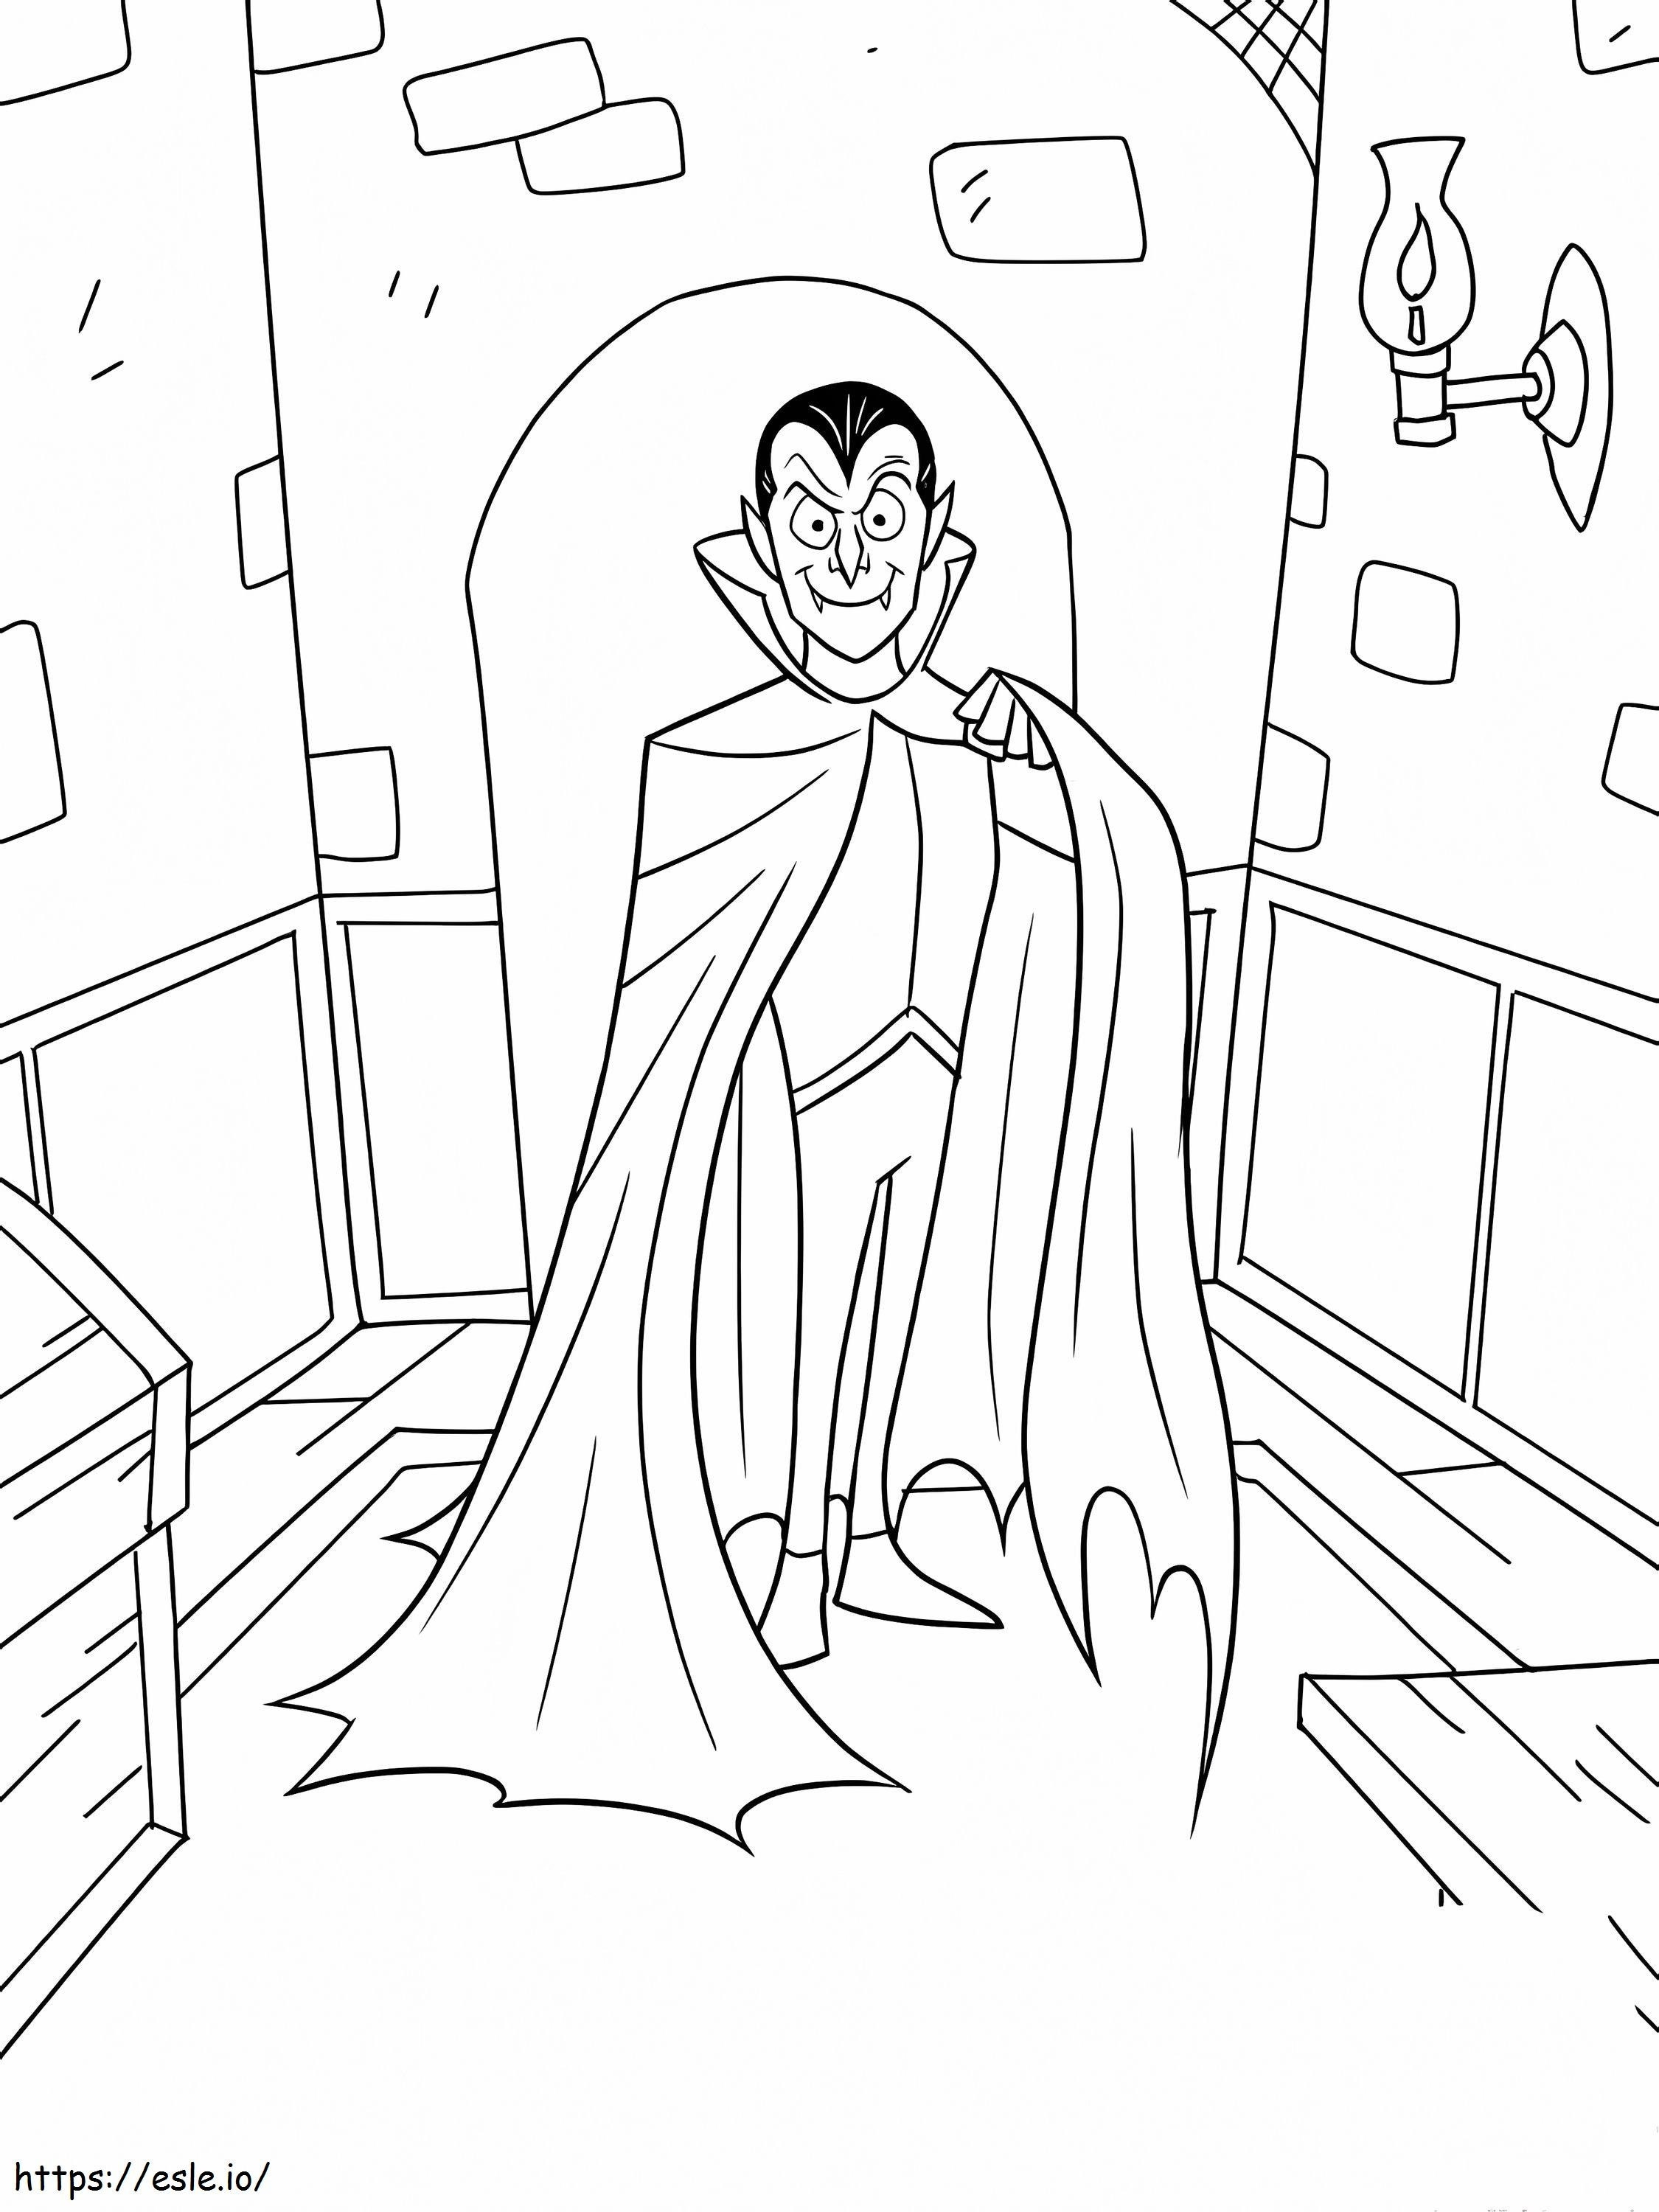 Dracula At Home coloring page